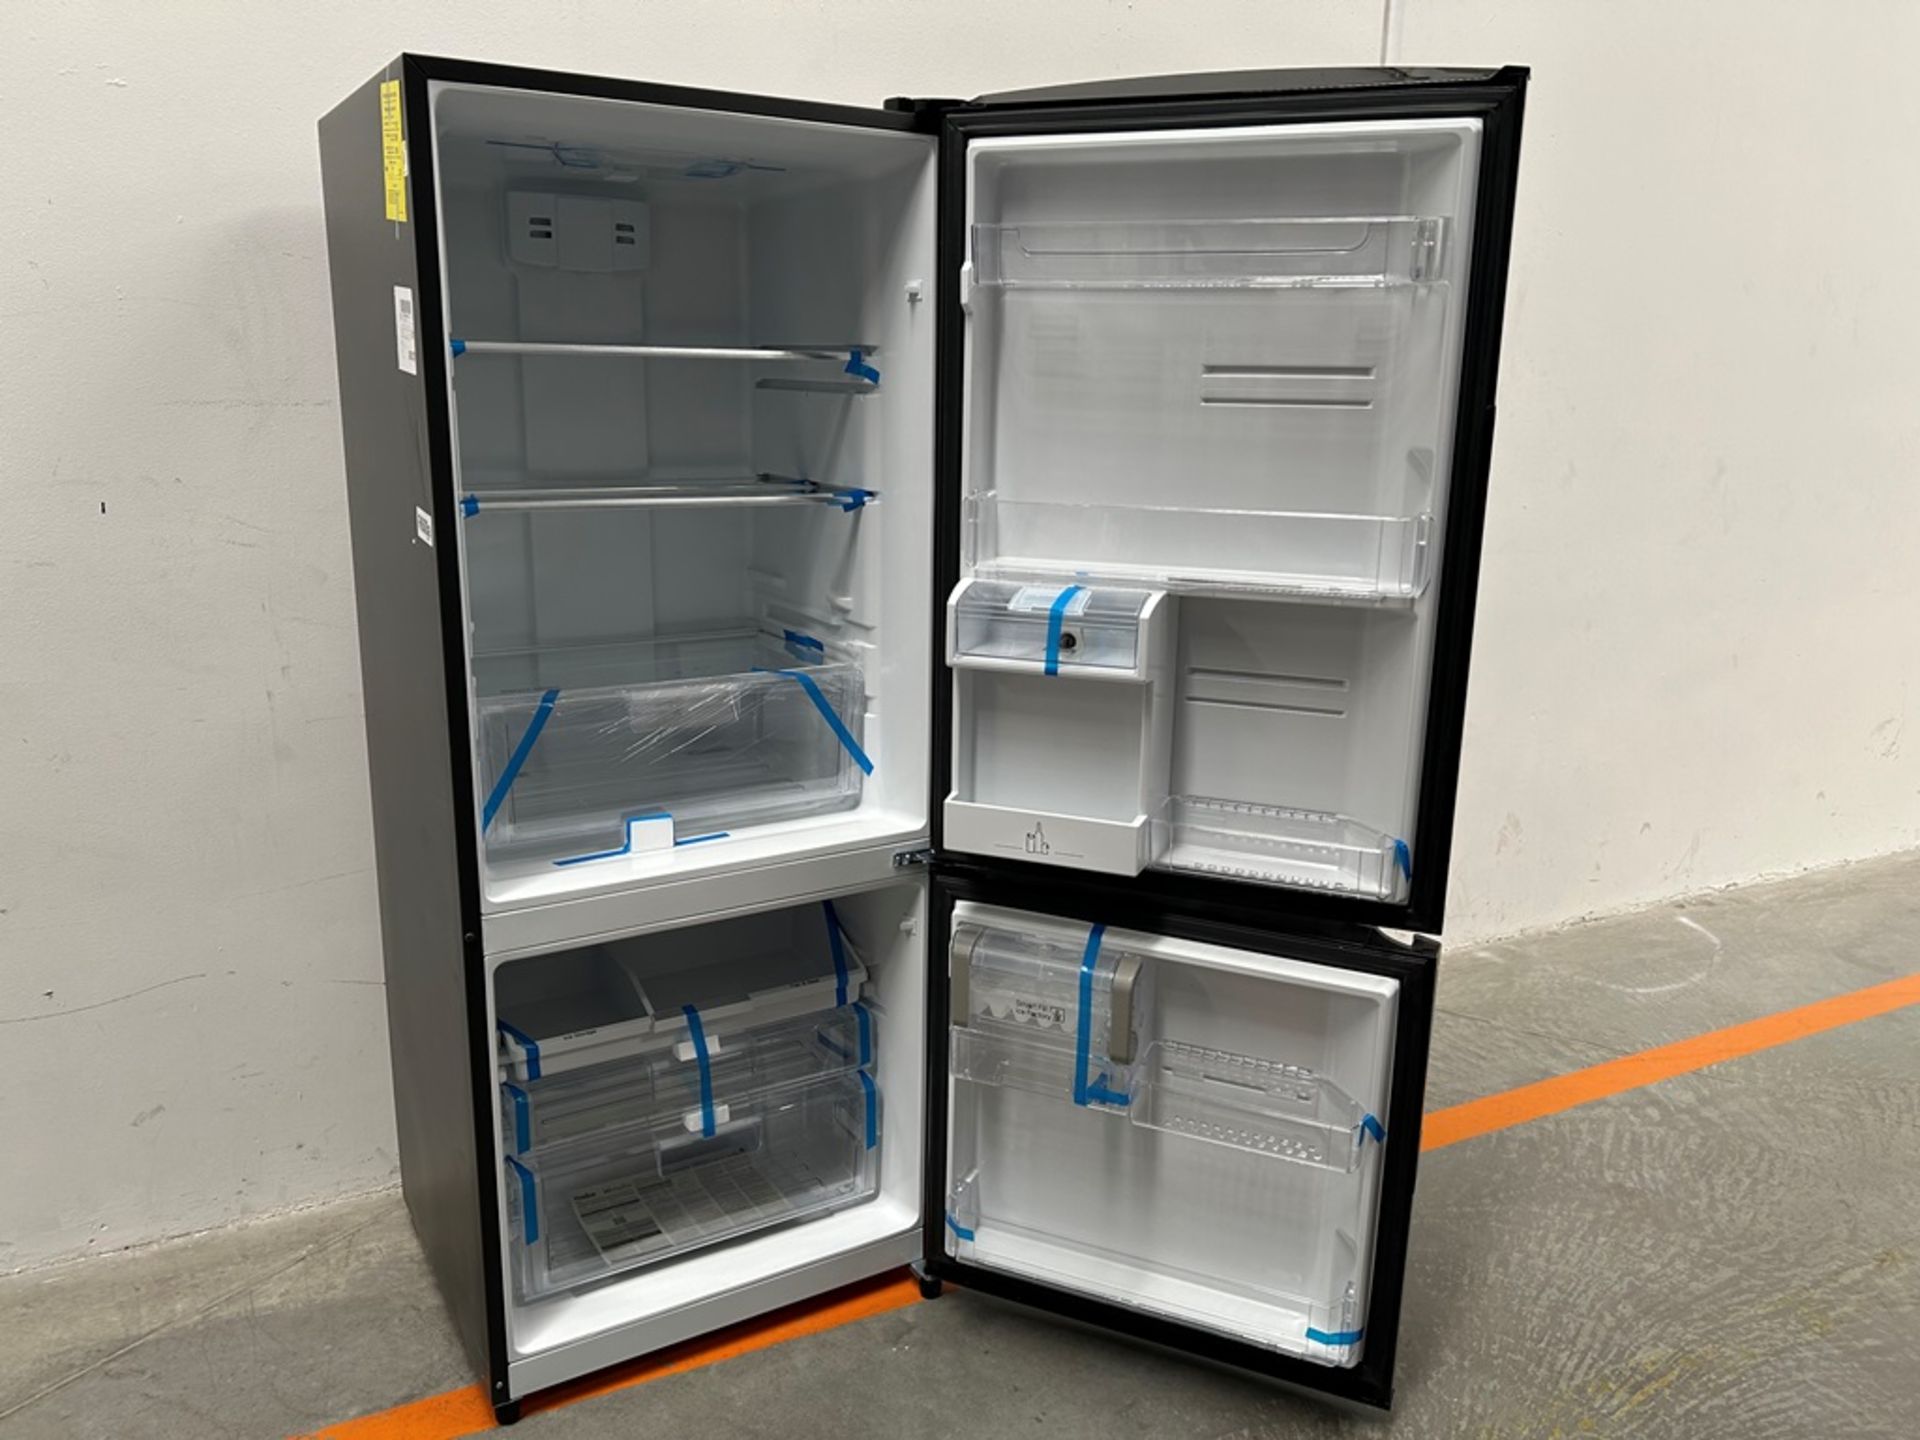 Refrigerador con dispensador de agua Marca MABE, Modelo RMS510IJMRP, Serie 407168, Color NEGRO (Fav - Image 4 of 12